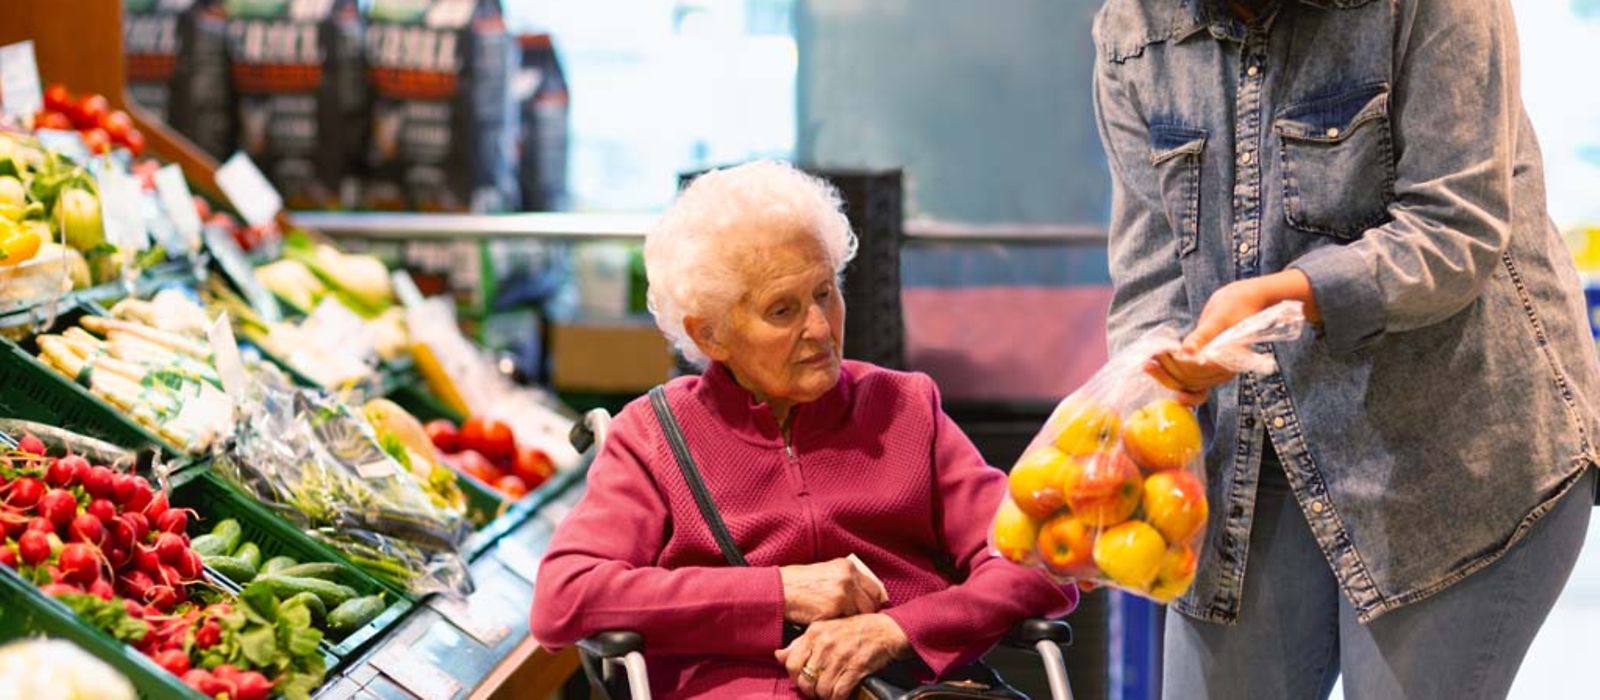 Eine junge Frau zeigt einer älteren Dame beim Einkauf eine Tüte mit Äpfeln.